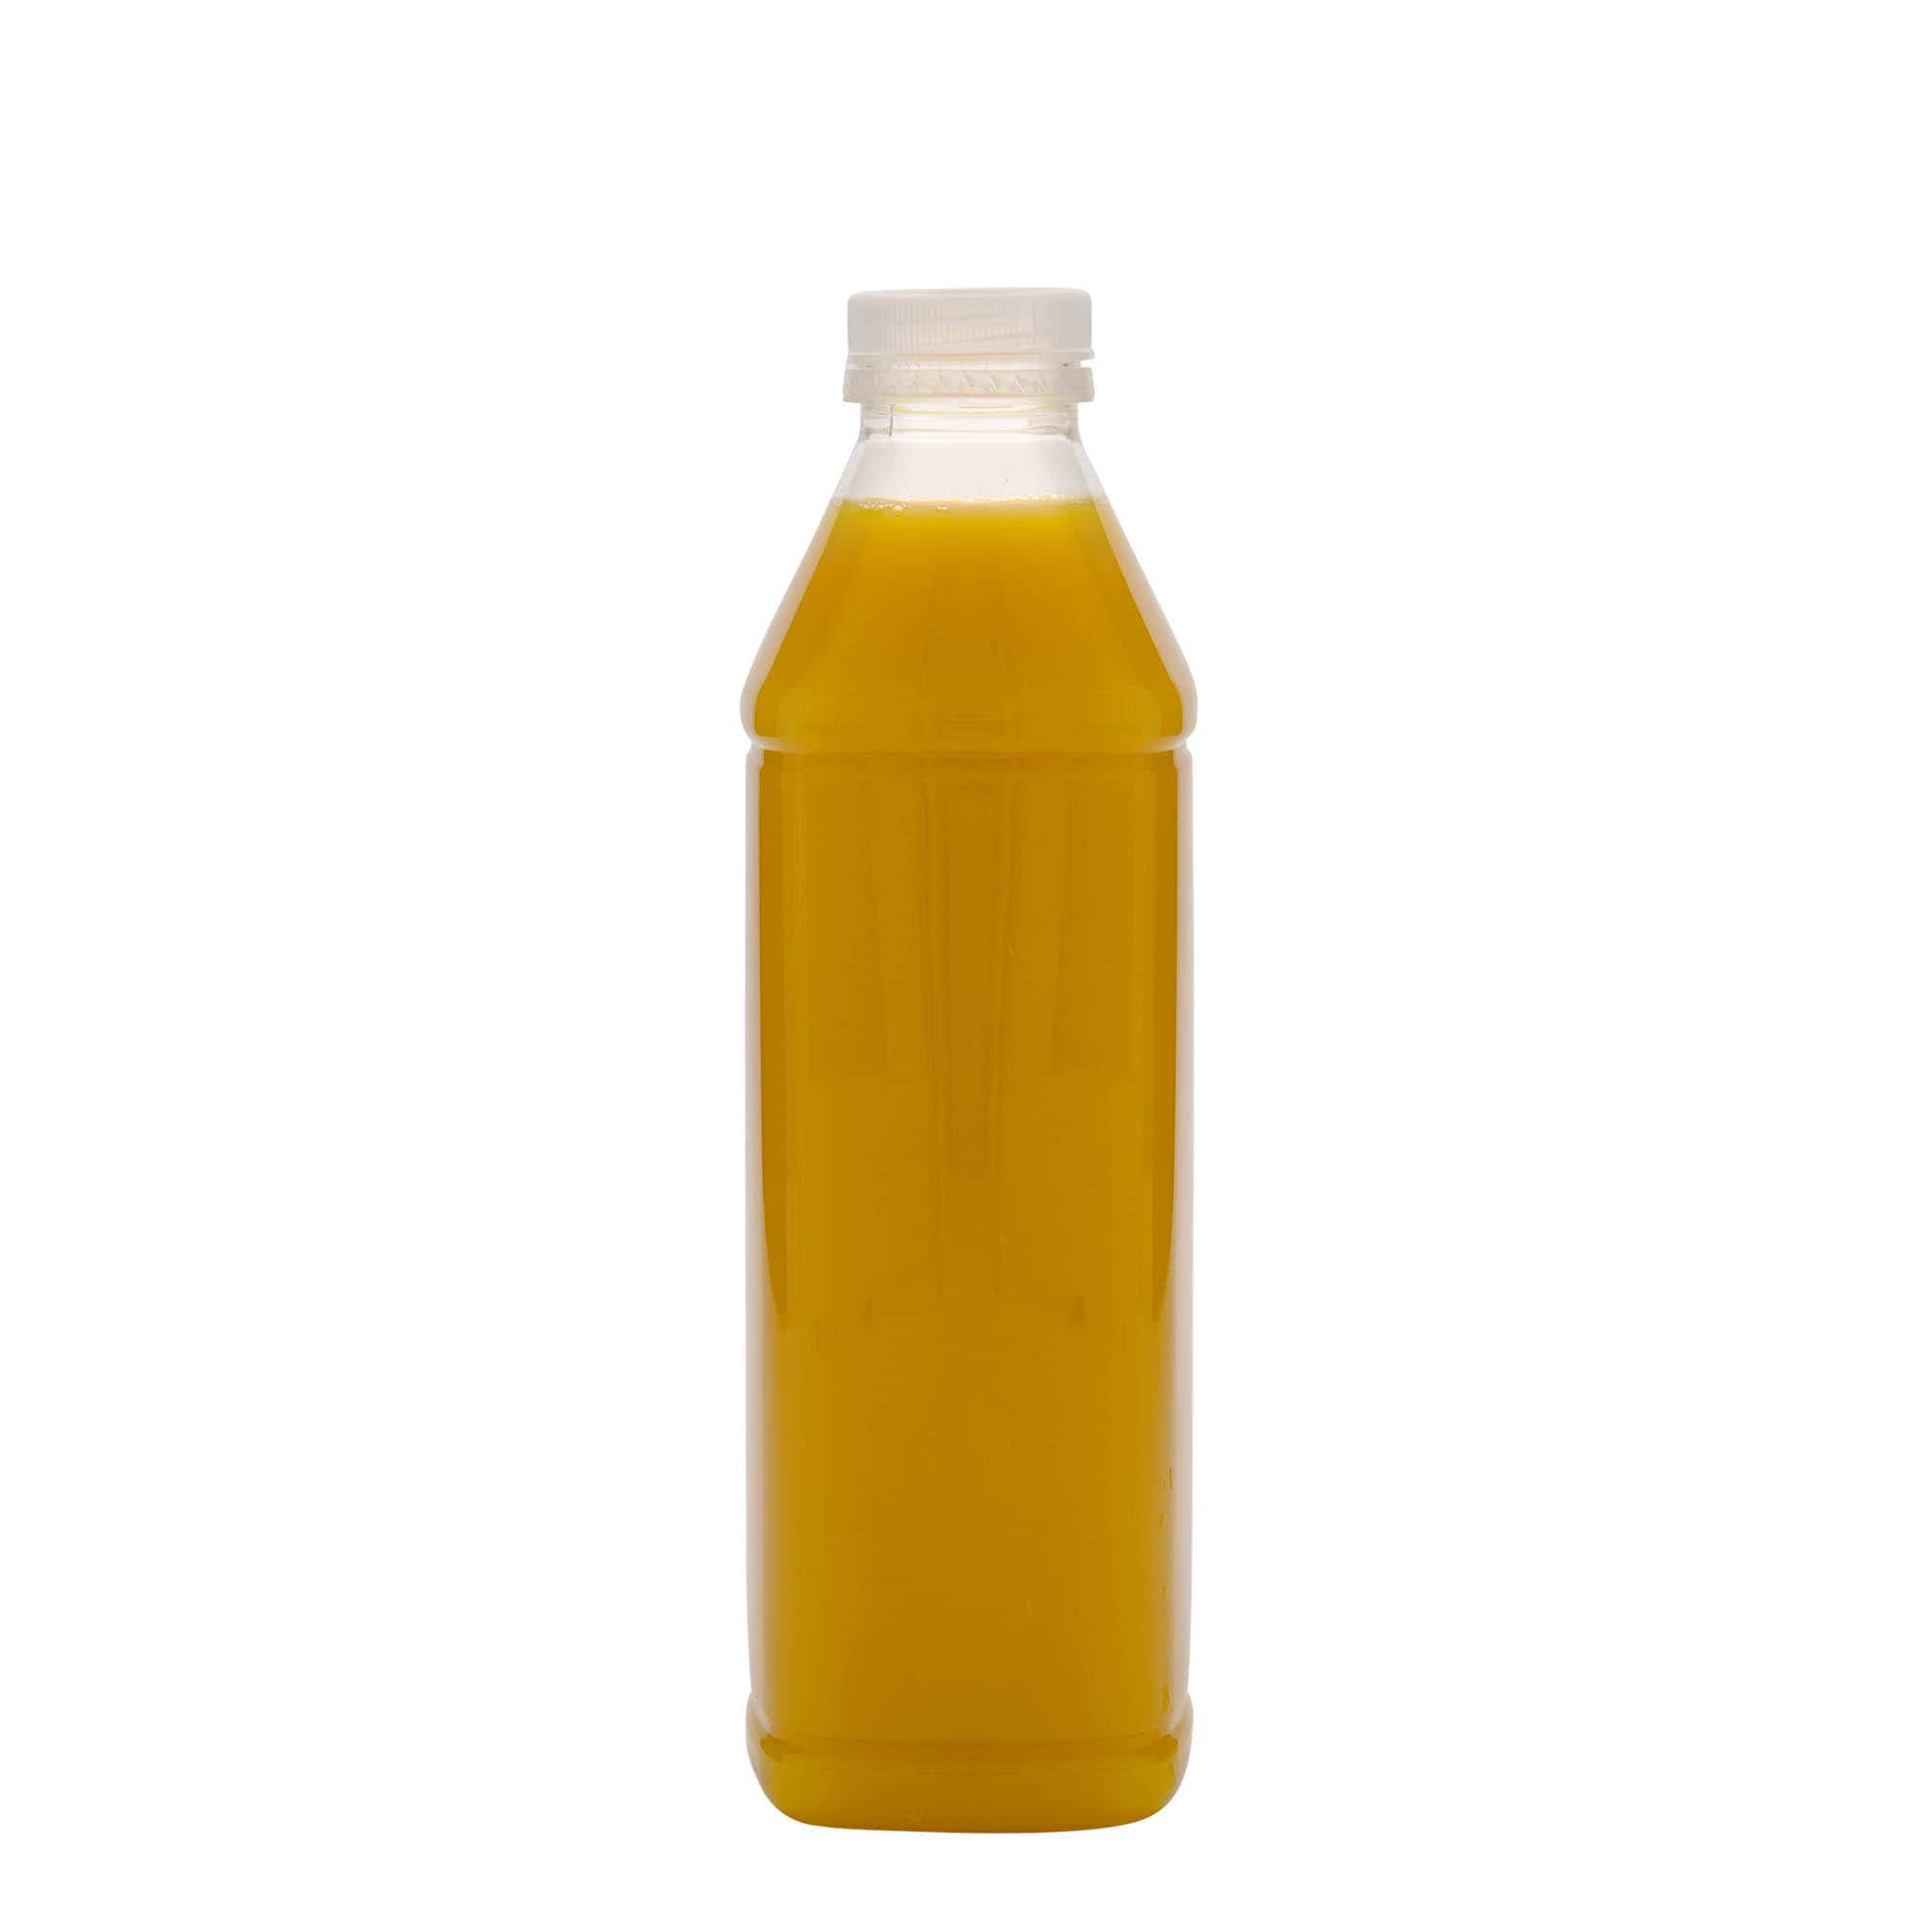 1,000 ml PET bottle ‘Milk and Juice Carré’, square, plastic, closure: 38 mm